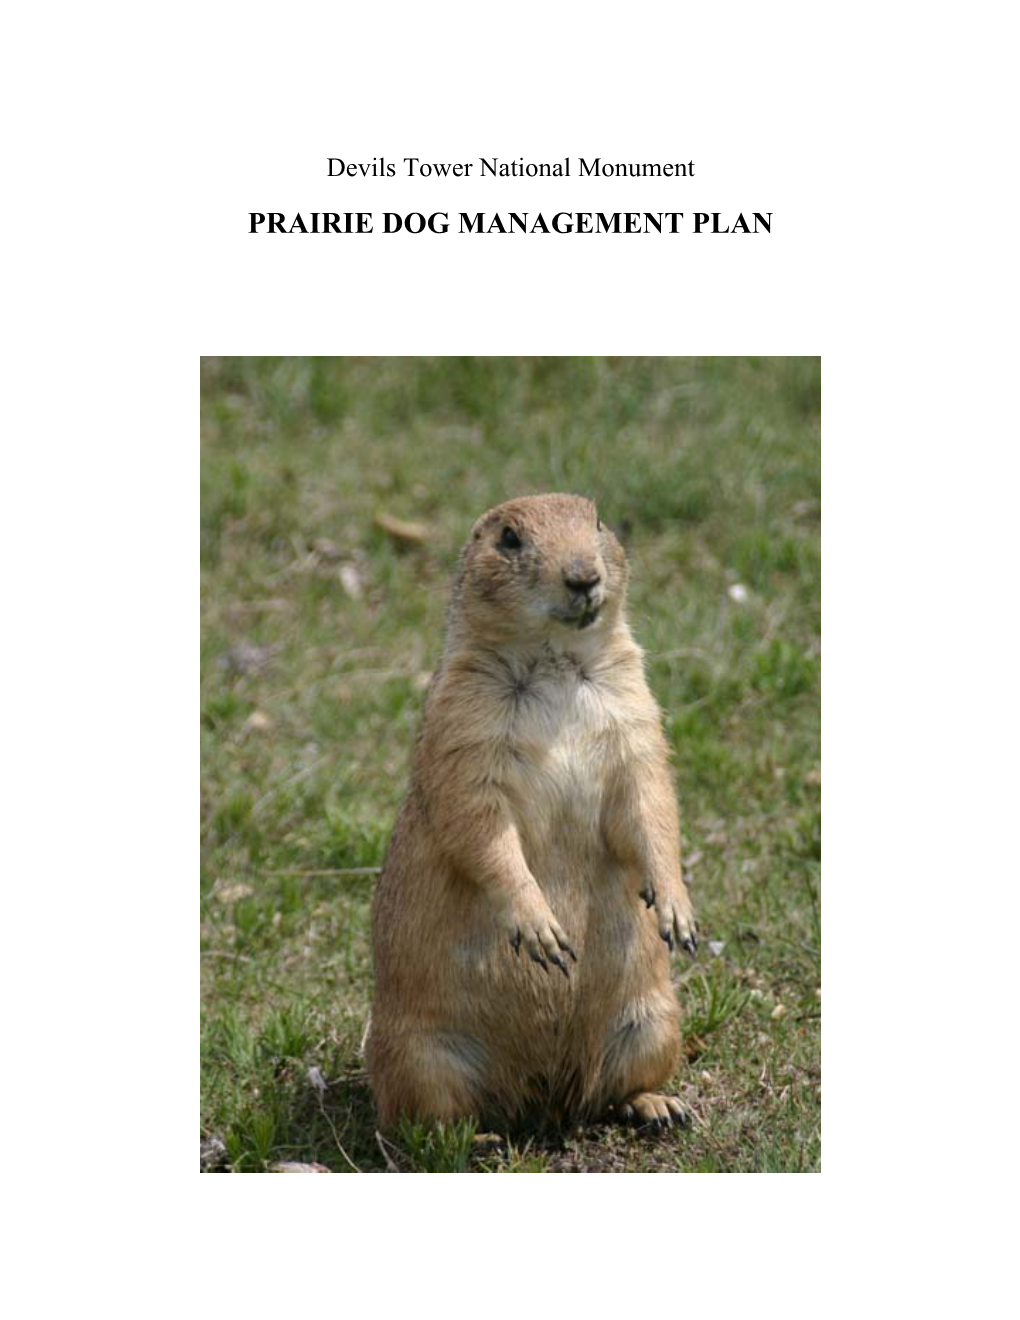 Prairie Dog Management Plan